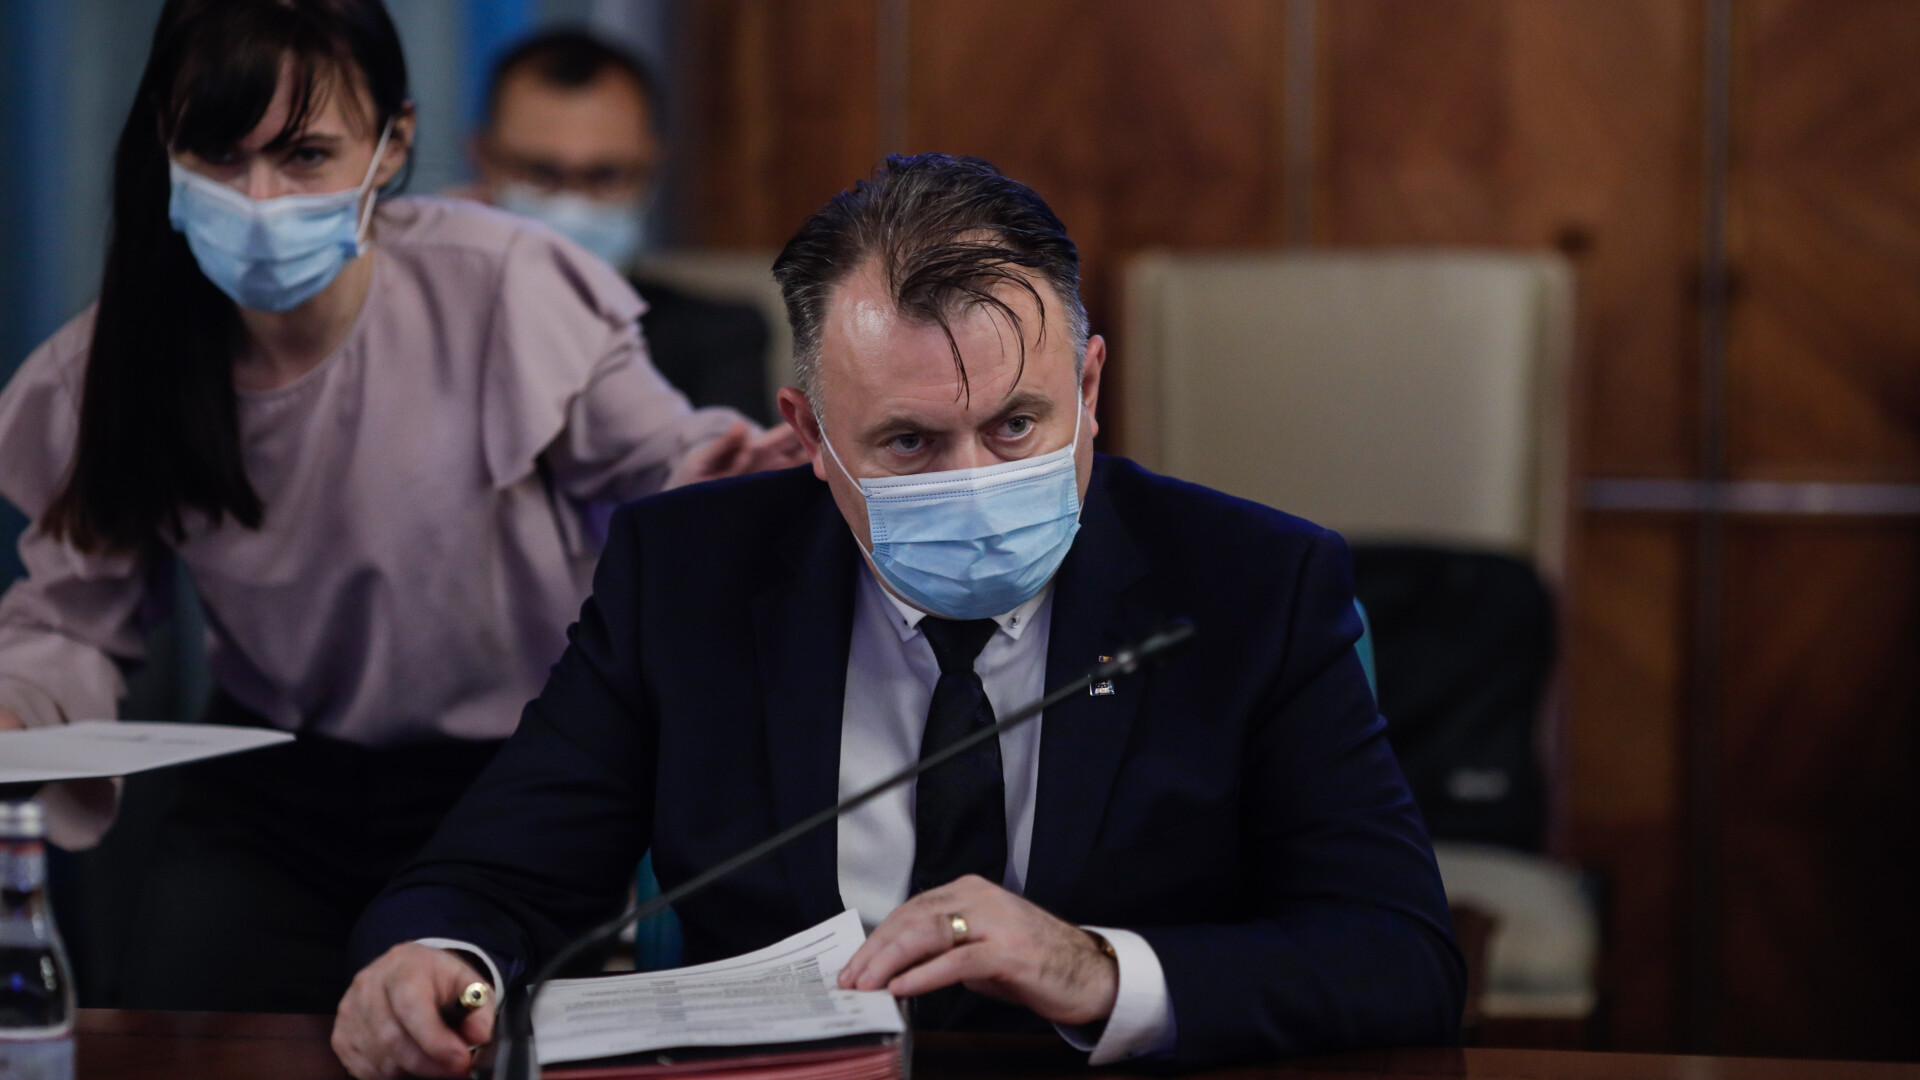 Ce spune Tătaru despre prelungirea stării de alertă: ”Este o stare de risc epidemic major”